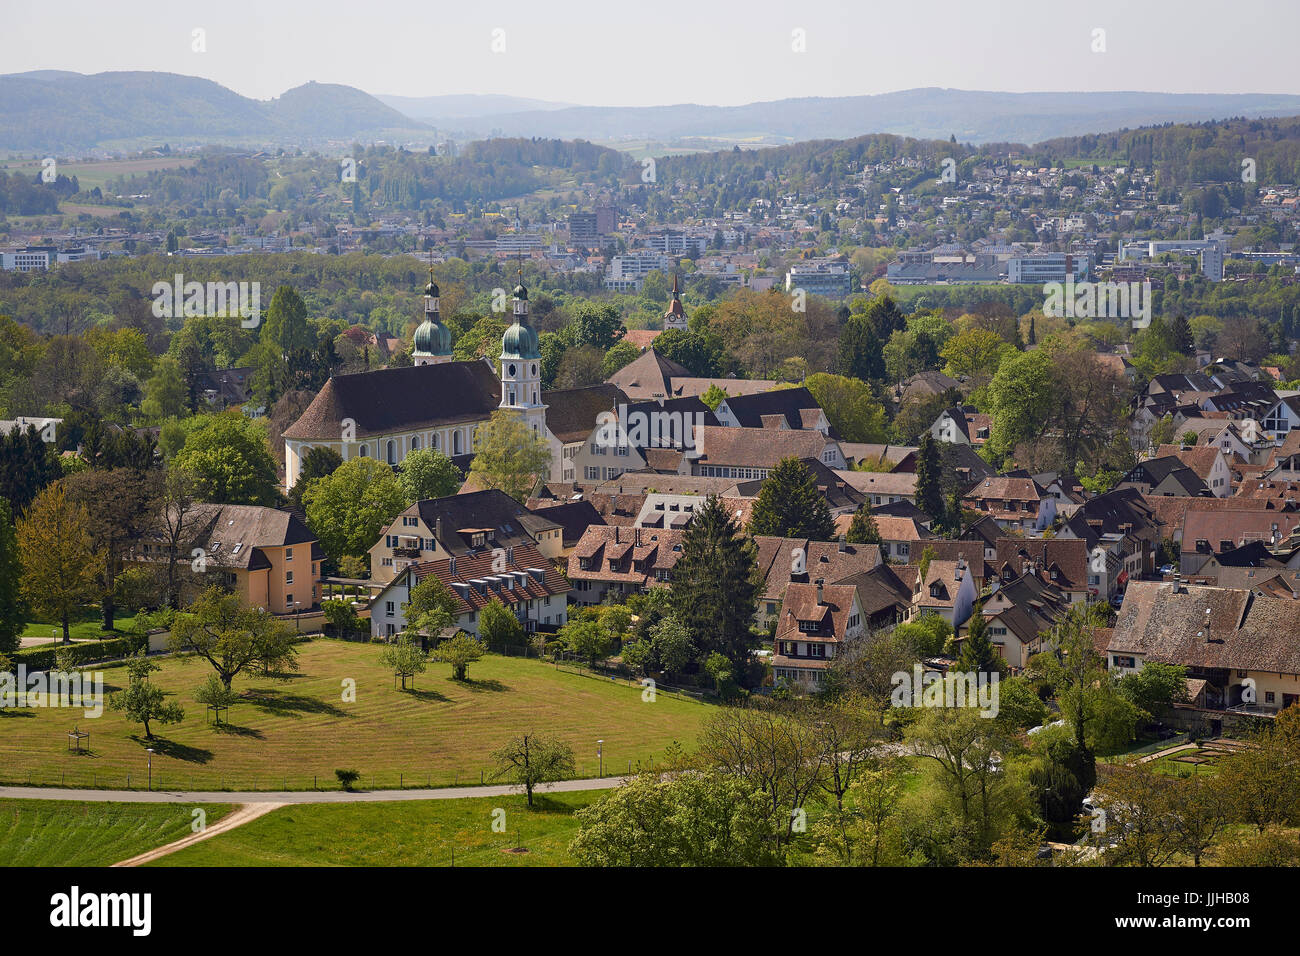 Arlesheim villaggio dall'alto, con la Chiesa del Duomo e il verde - nei pressi di Basilea, Baselland Kanton, Svizzera Foto Stock